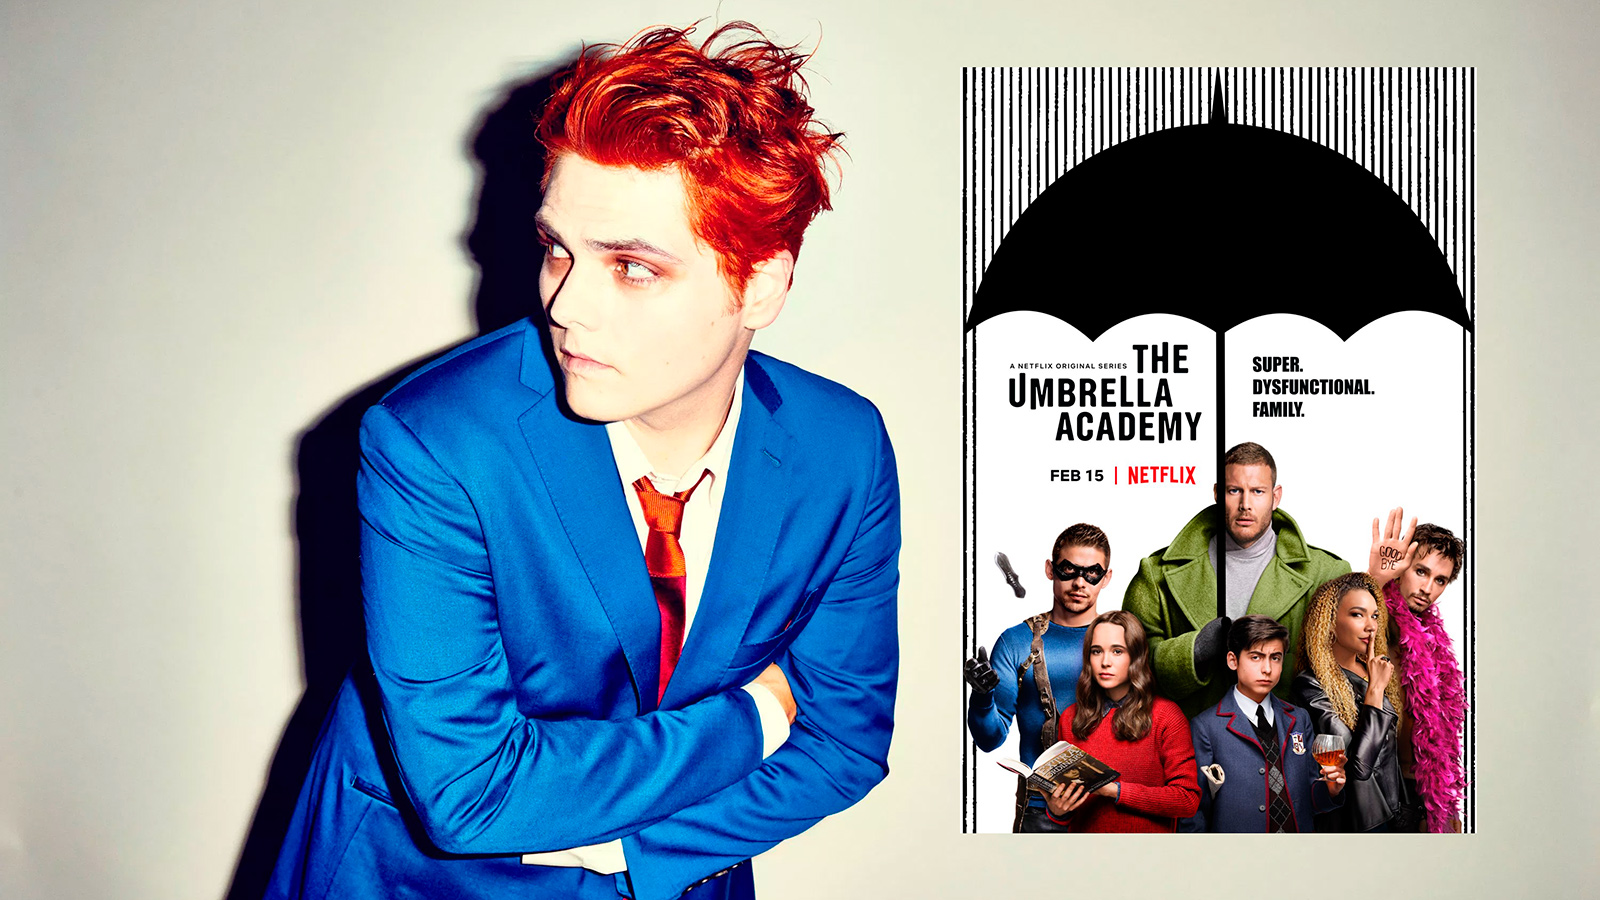 Gerard Way e la locandina della nuova serie Netflix "The Umbrella Academy".